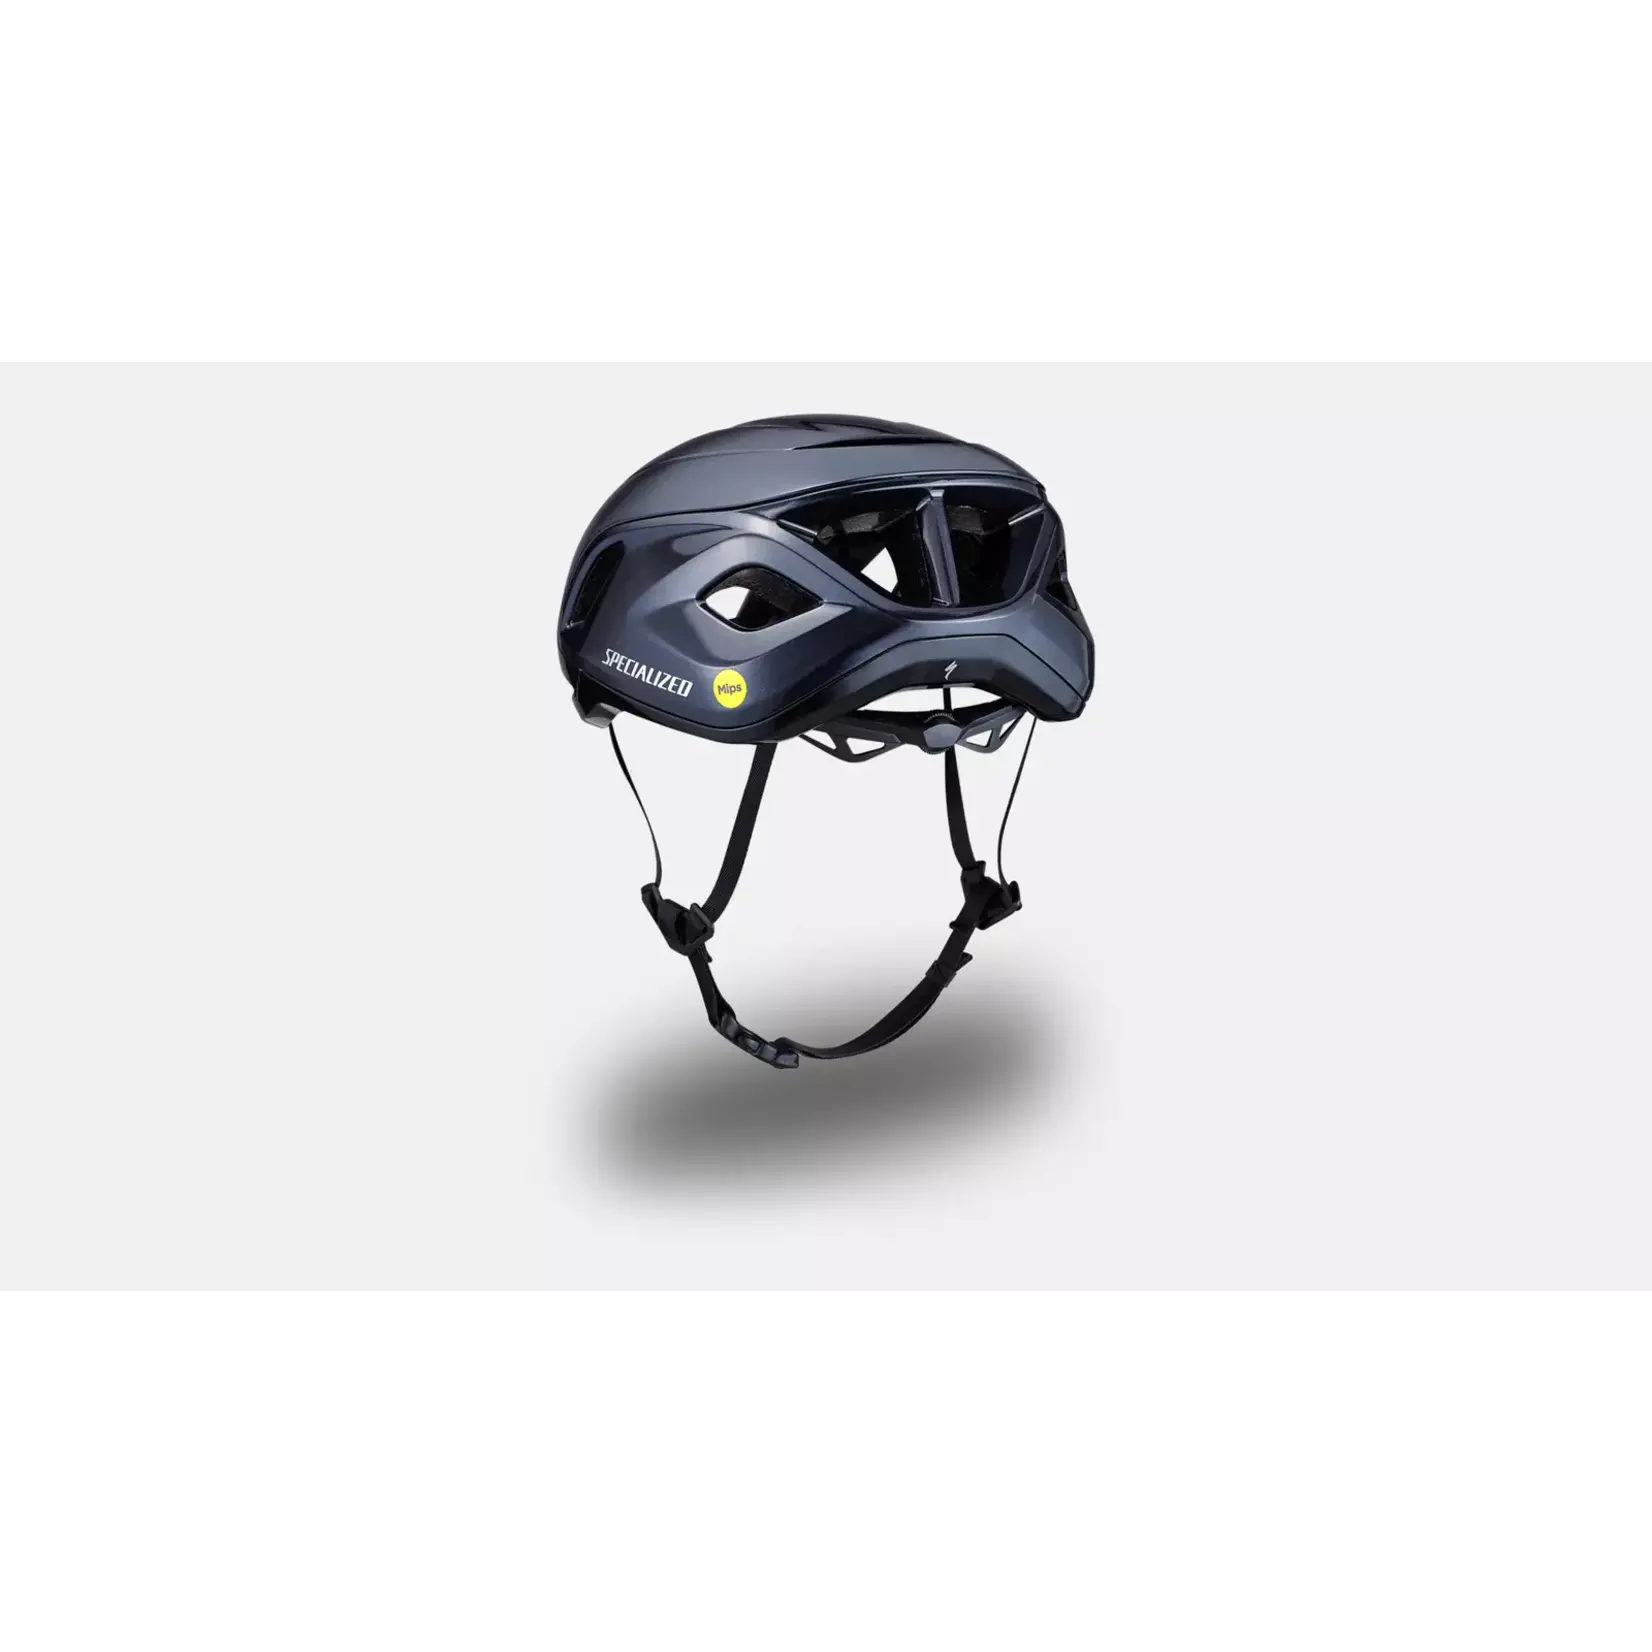 Specialized Specialized Propero 4 Helmet